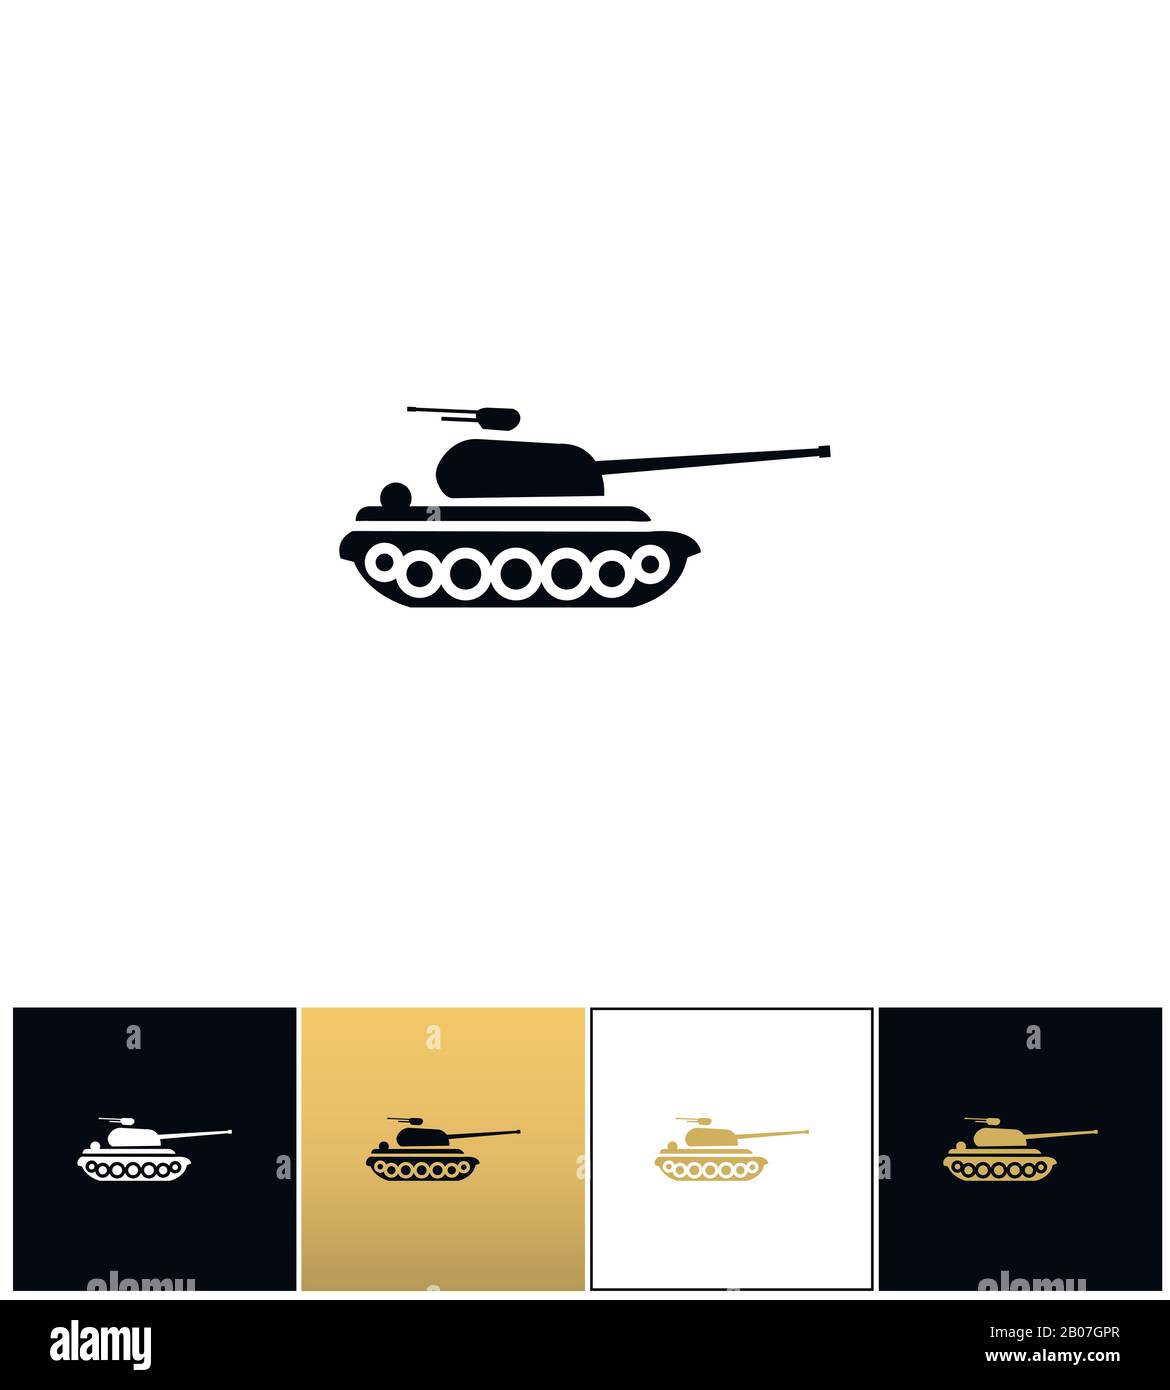 Militärpanzerschild oder Feuerkriegsartillerie-Vektorsymbol. Militärpanzerschild oder Feuerkriegsartillerie-Piktogramm auf schwarzem, weißem und goldenem Hintergrund Stock Vektor